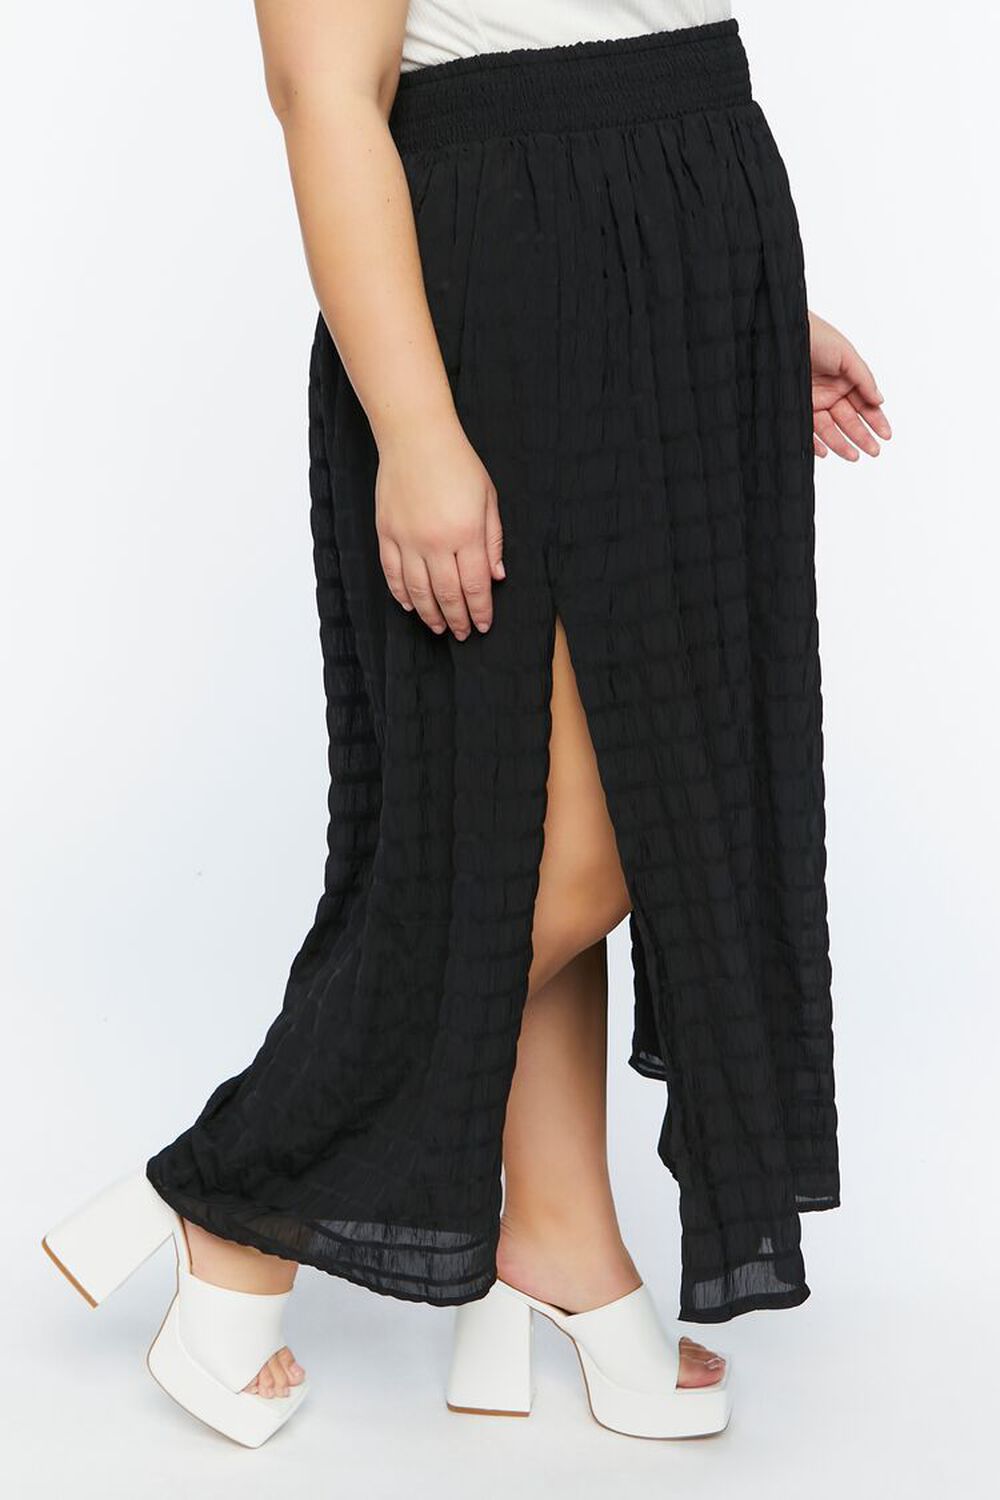 BLACK Plus Size A-Line Maxi Skirt, image 3